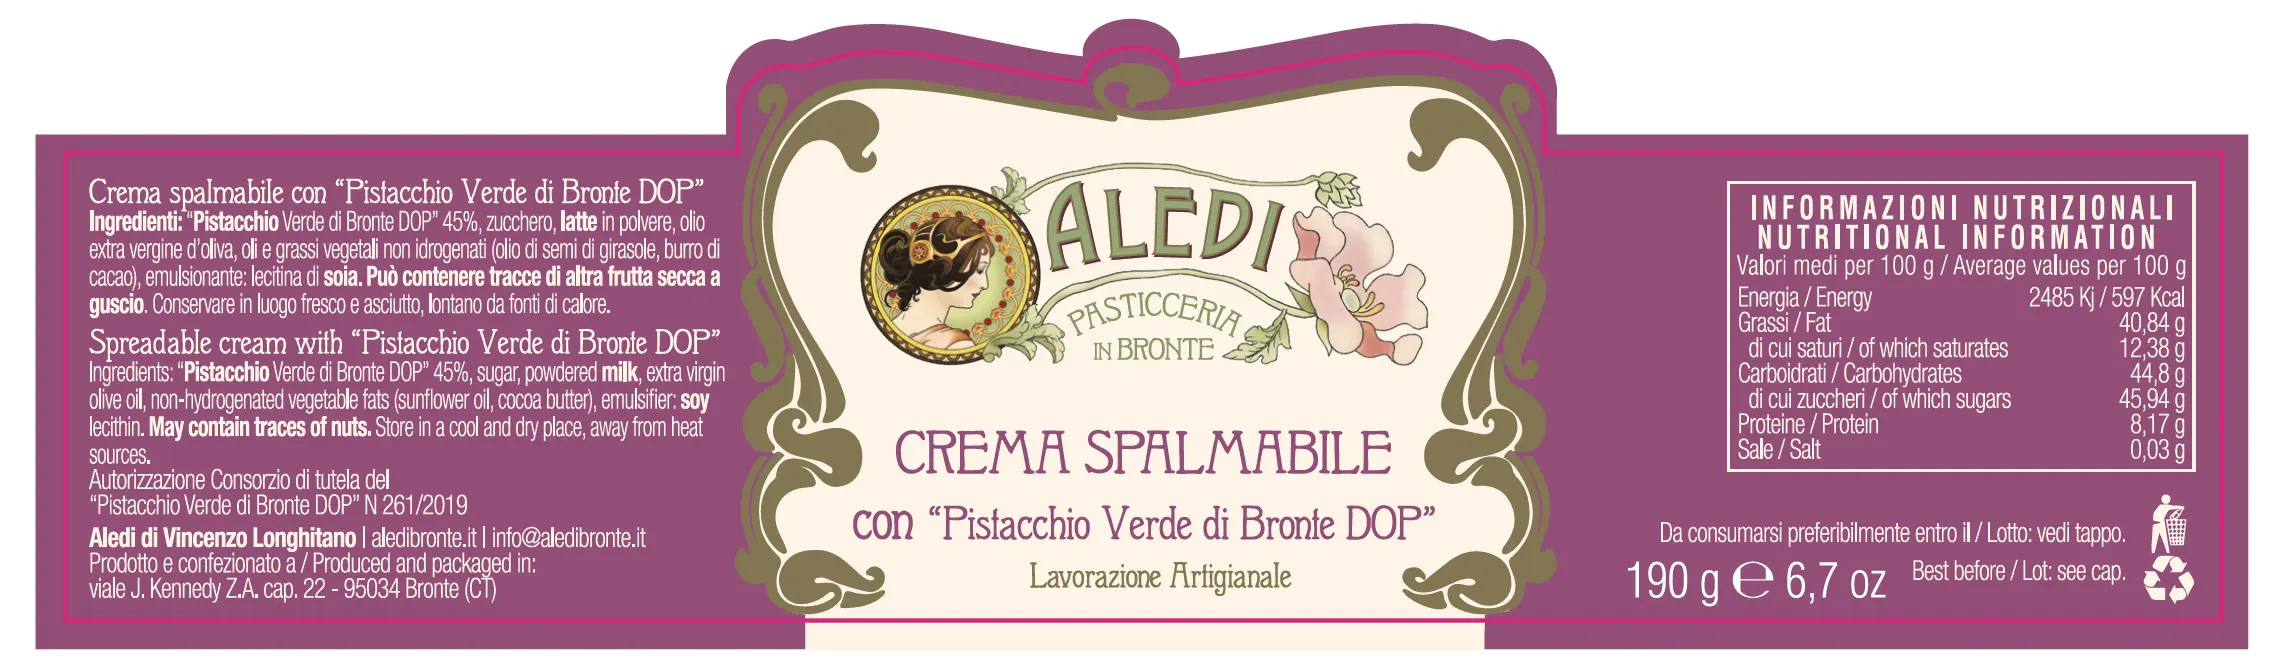 Crema-Spalmabile-Al-Pistacchio-Di-Bronte-Dop-Etichetta